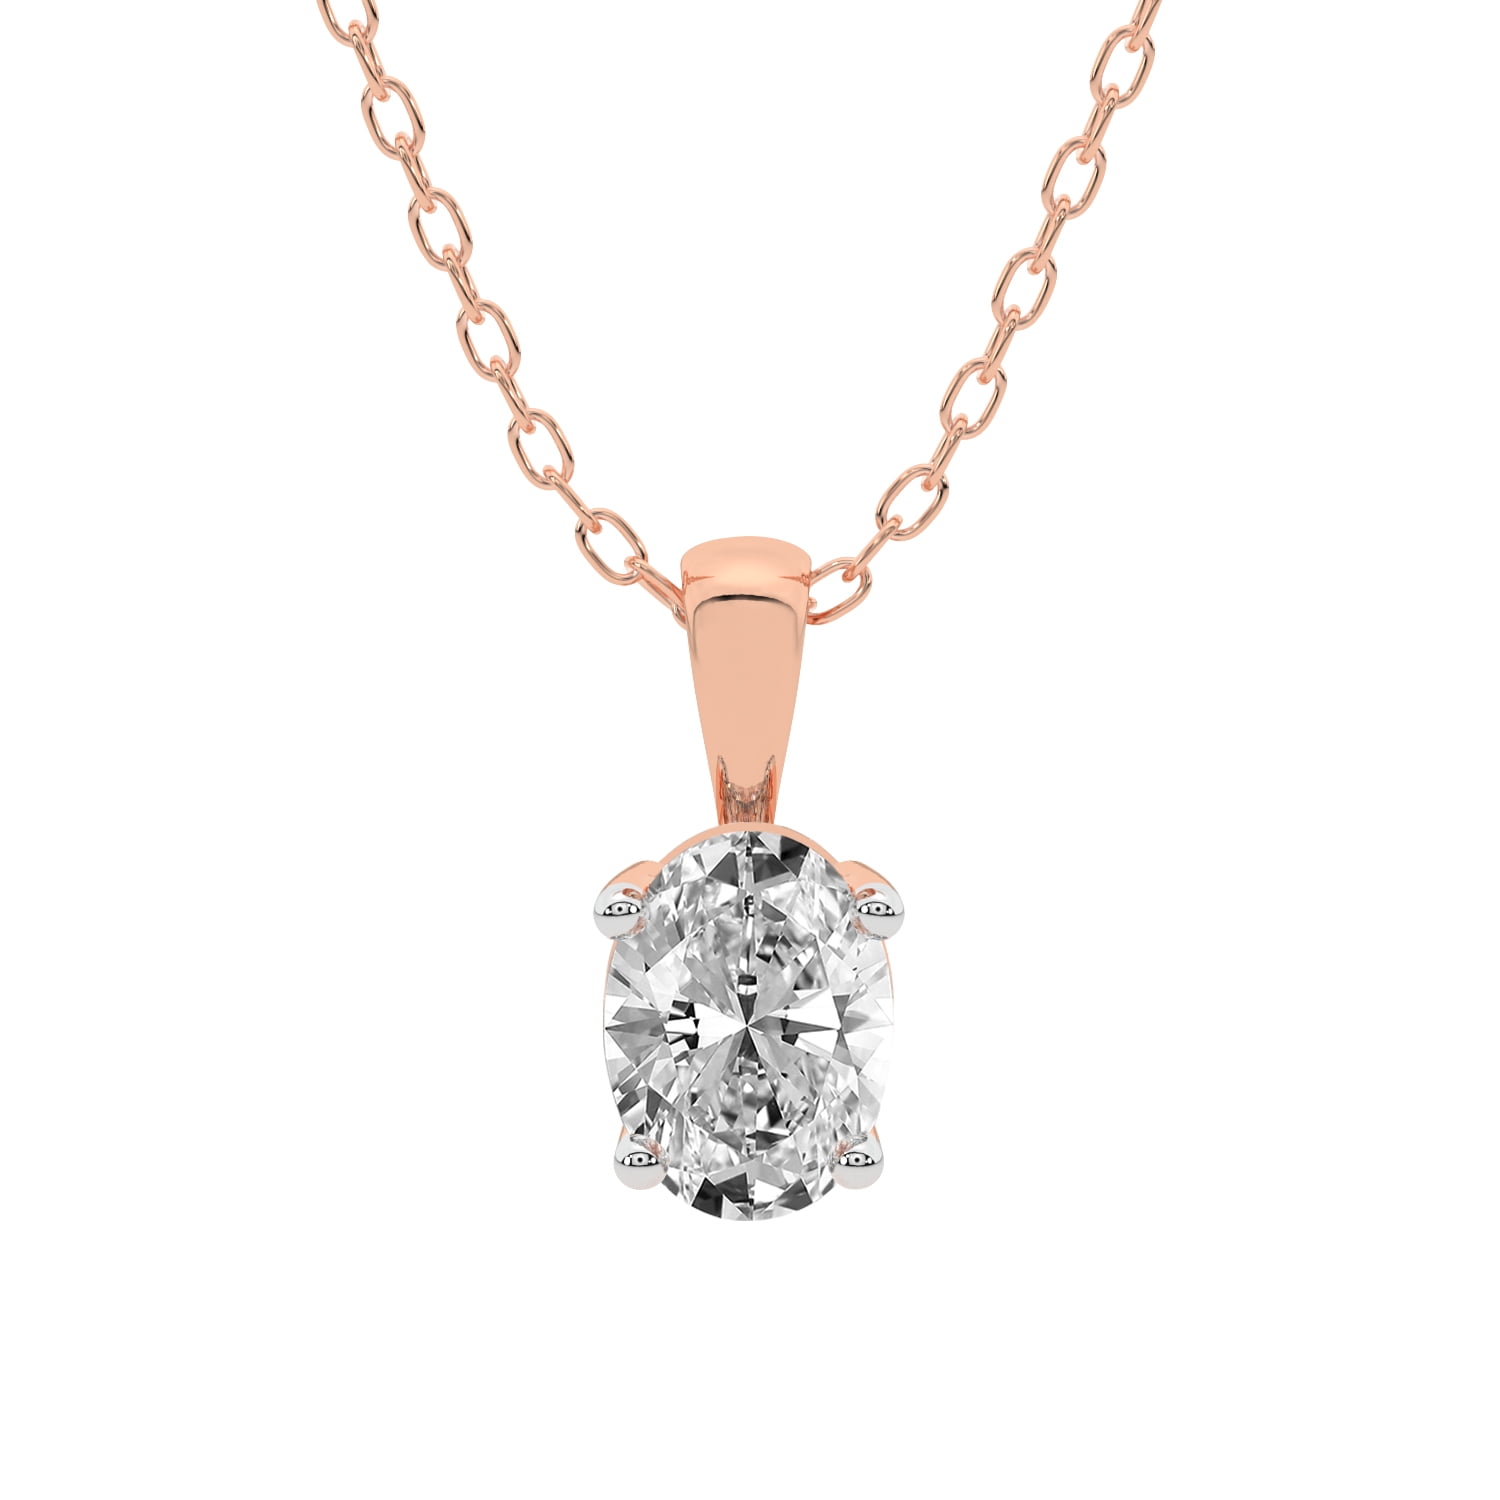 Versatile Single line American Diamond Necklace – 𝗔𝘀𝗽 𝗙𝗮𝘀𝗵𝗶𝗼𝗻  𝗝𝗲𝘄𝗲𝗹𝗹𝗲𝗿𝘆